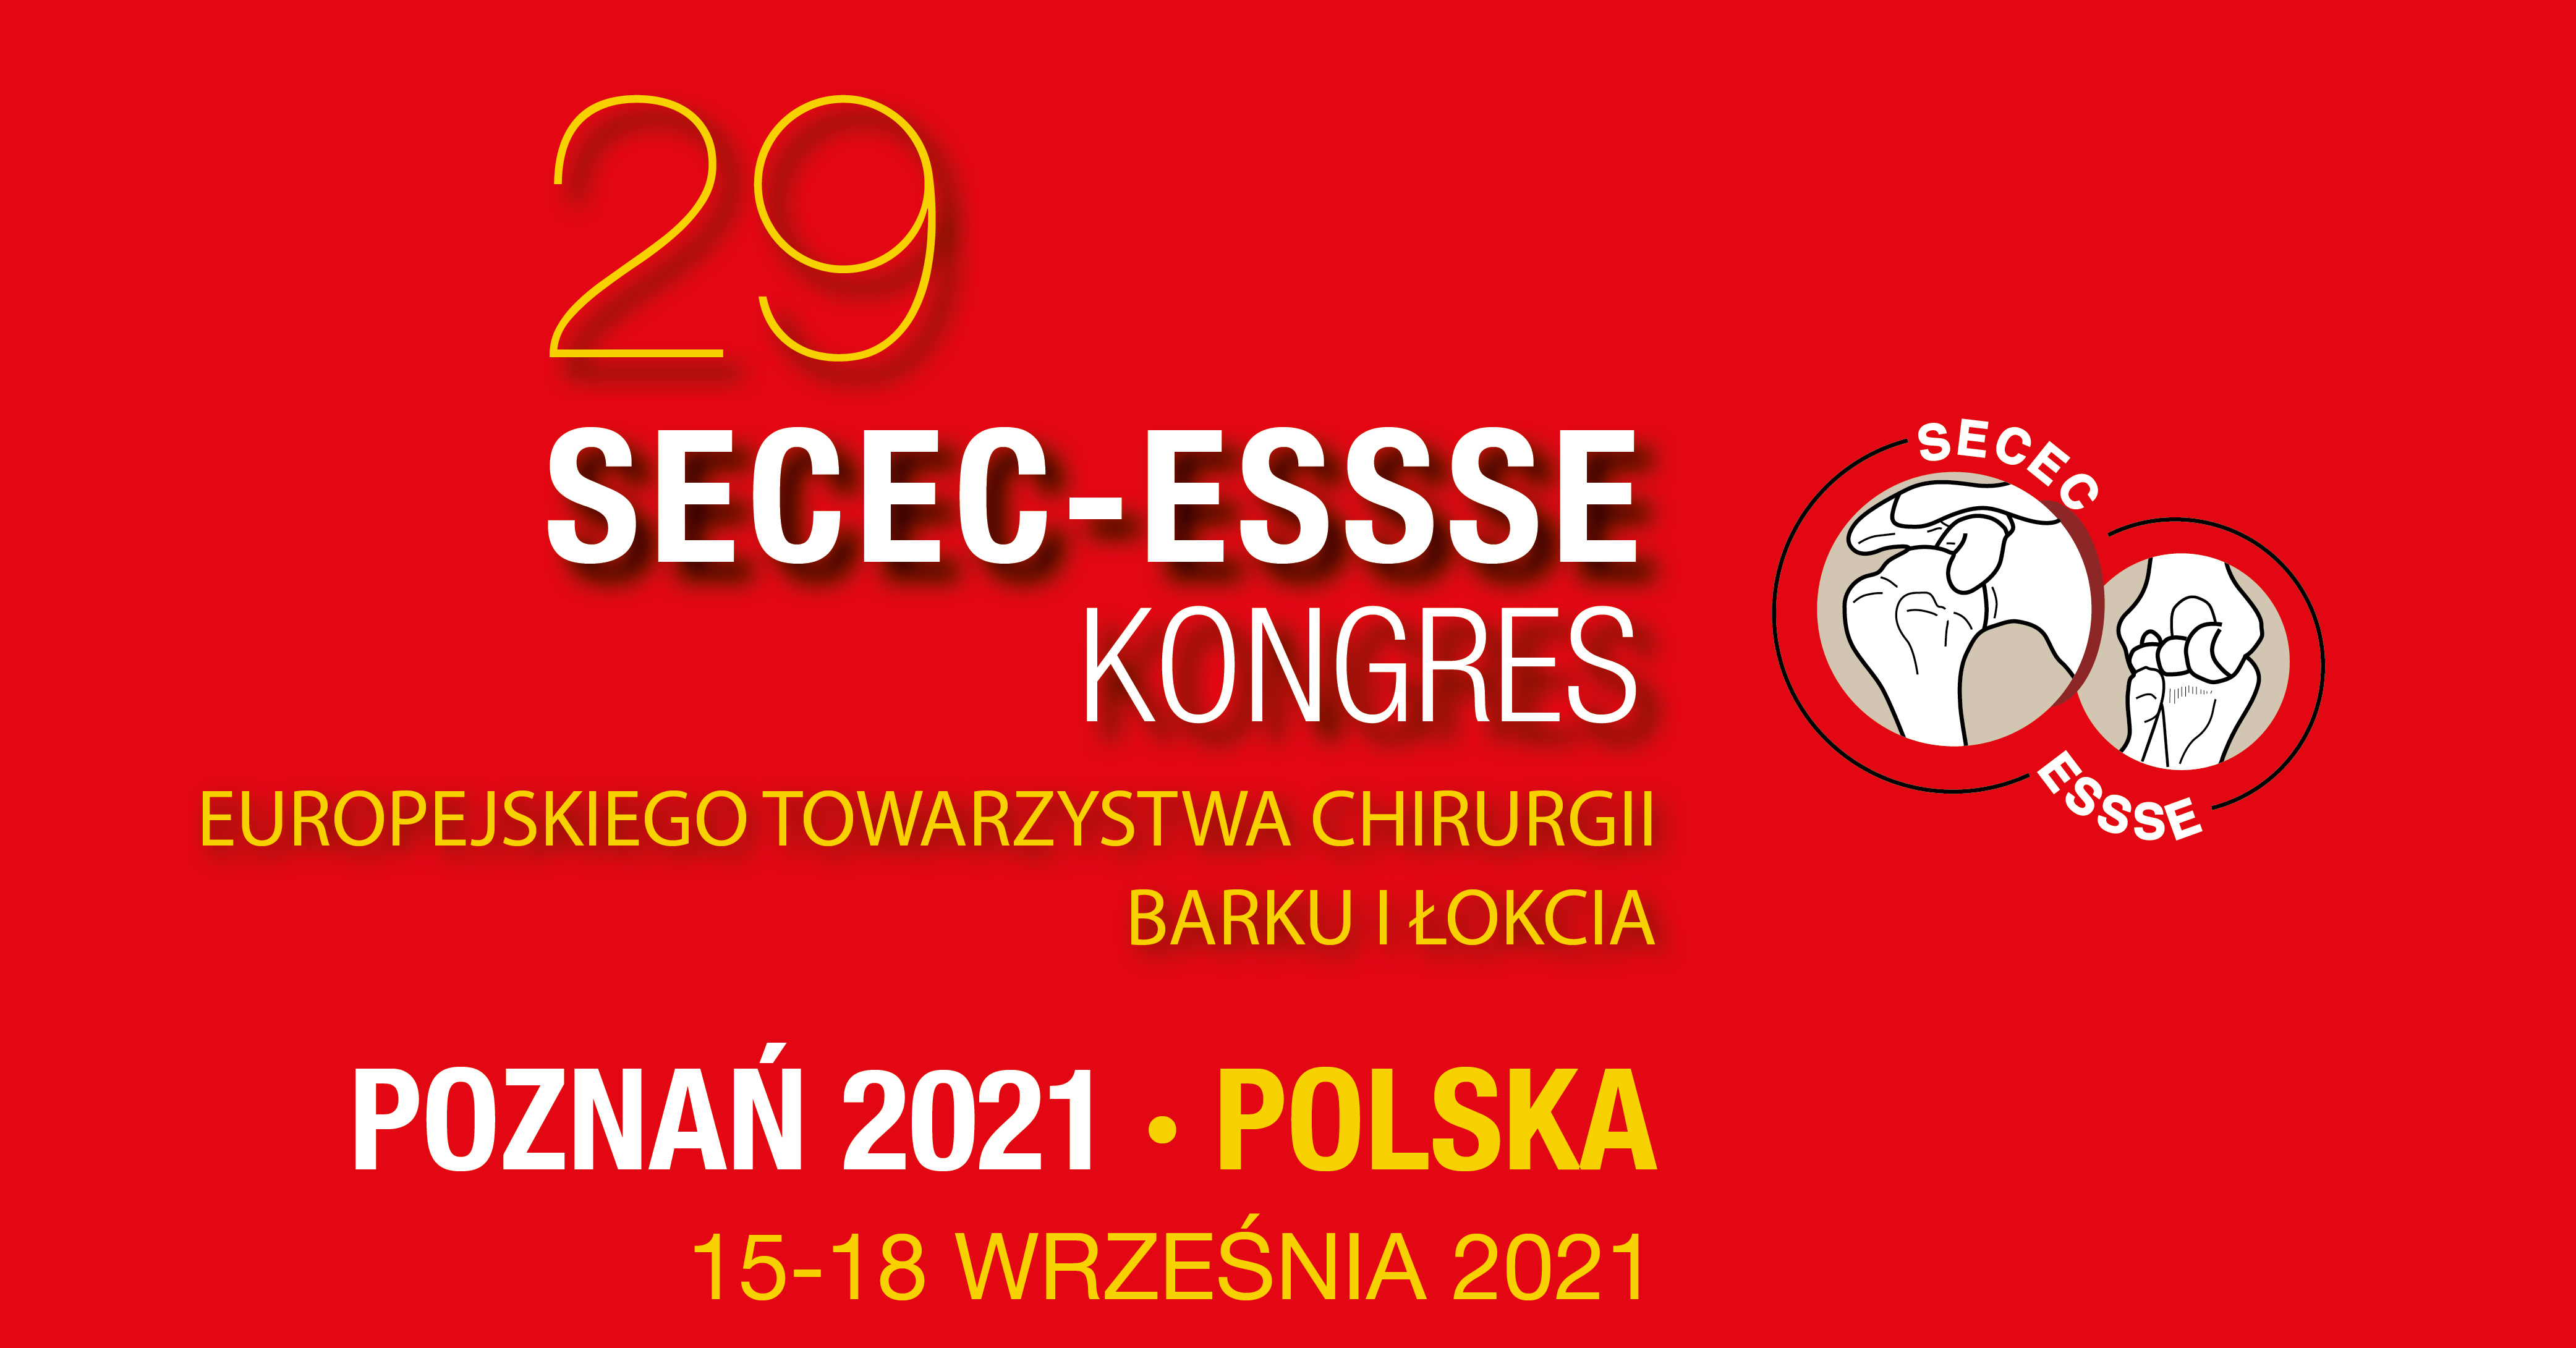 29 SECEC-ESSSE – KONGRES EUROPEJSKIEGO TOWARZYSTWA CHIRURGII BARKU I ŁOKCIA